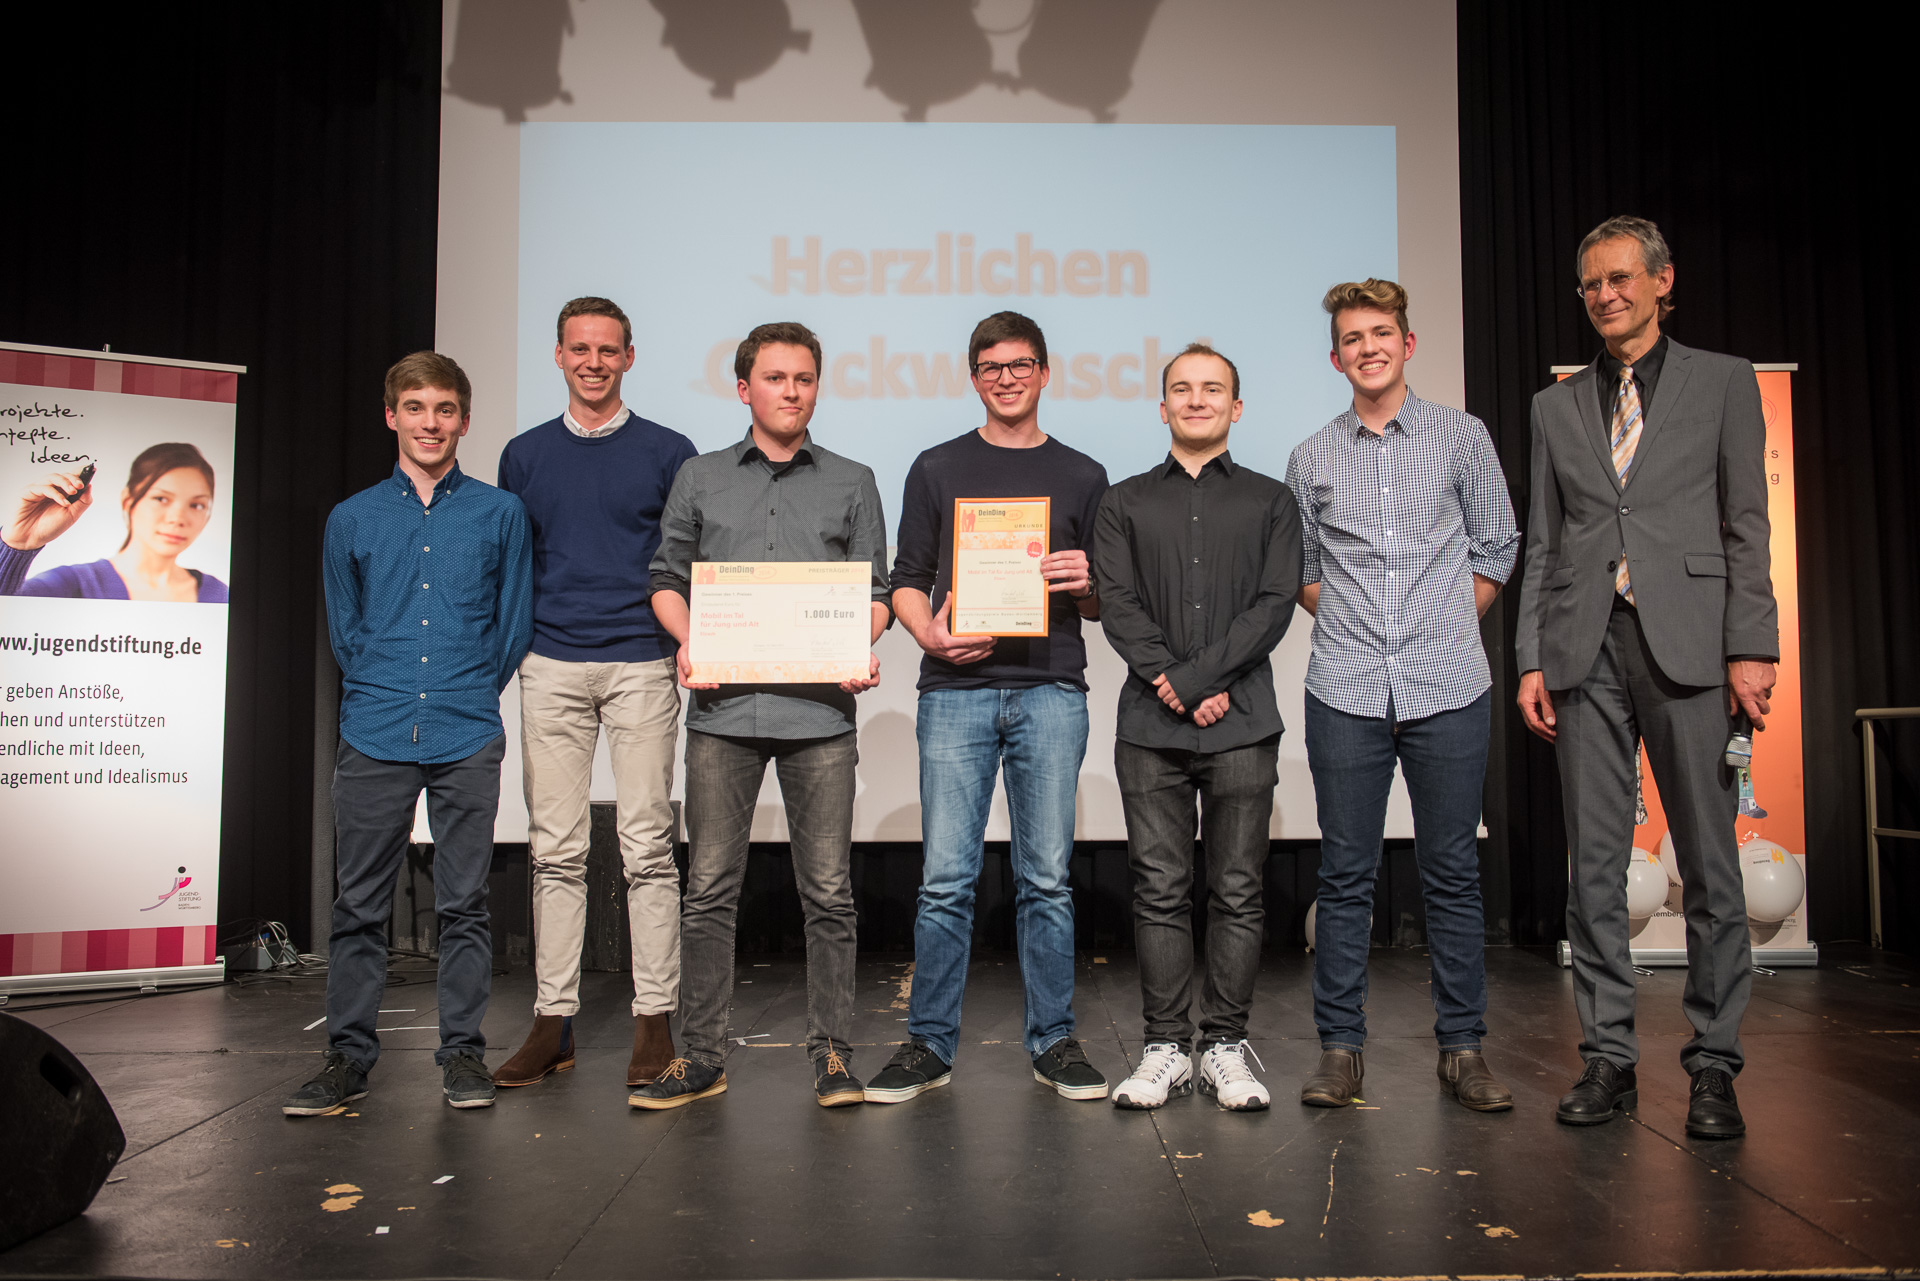 Mobil im Tal belegt den 1. Platz des Jugendbildungspreis Baden-Württemberg 2016